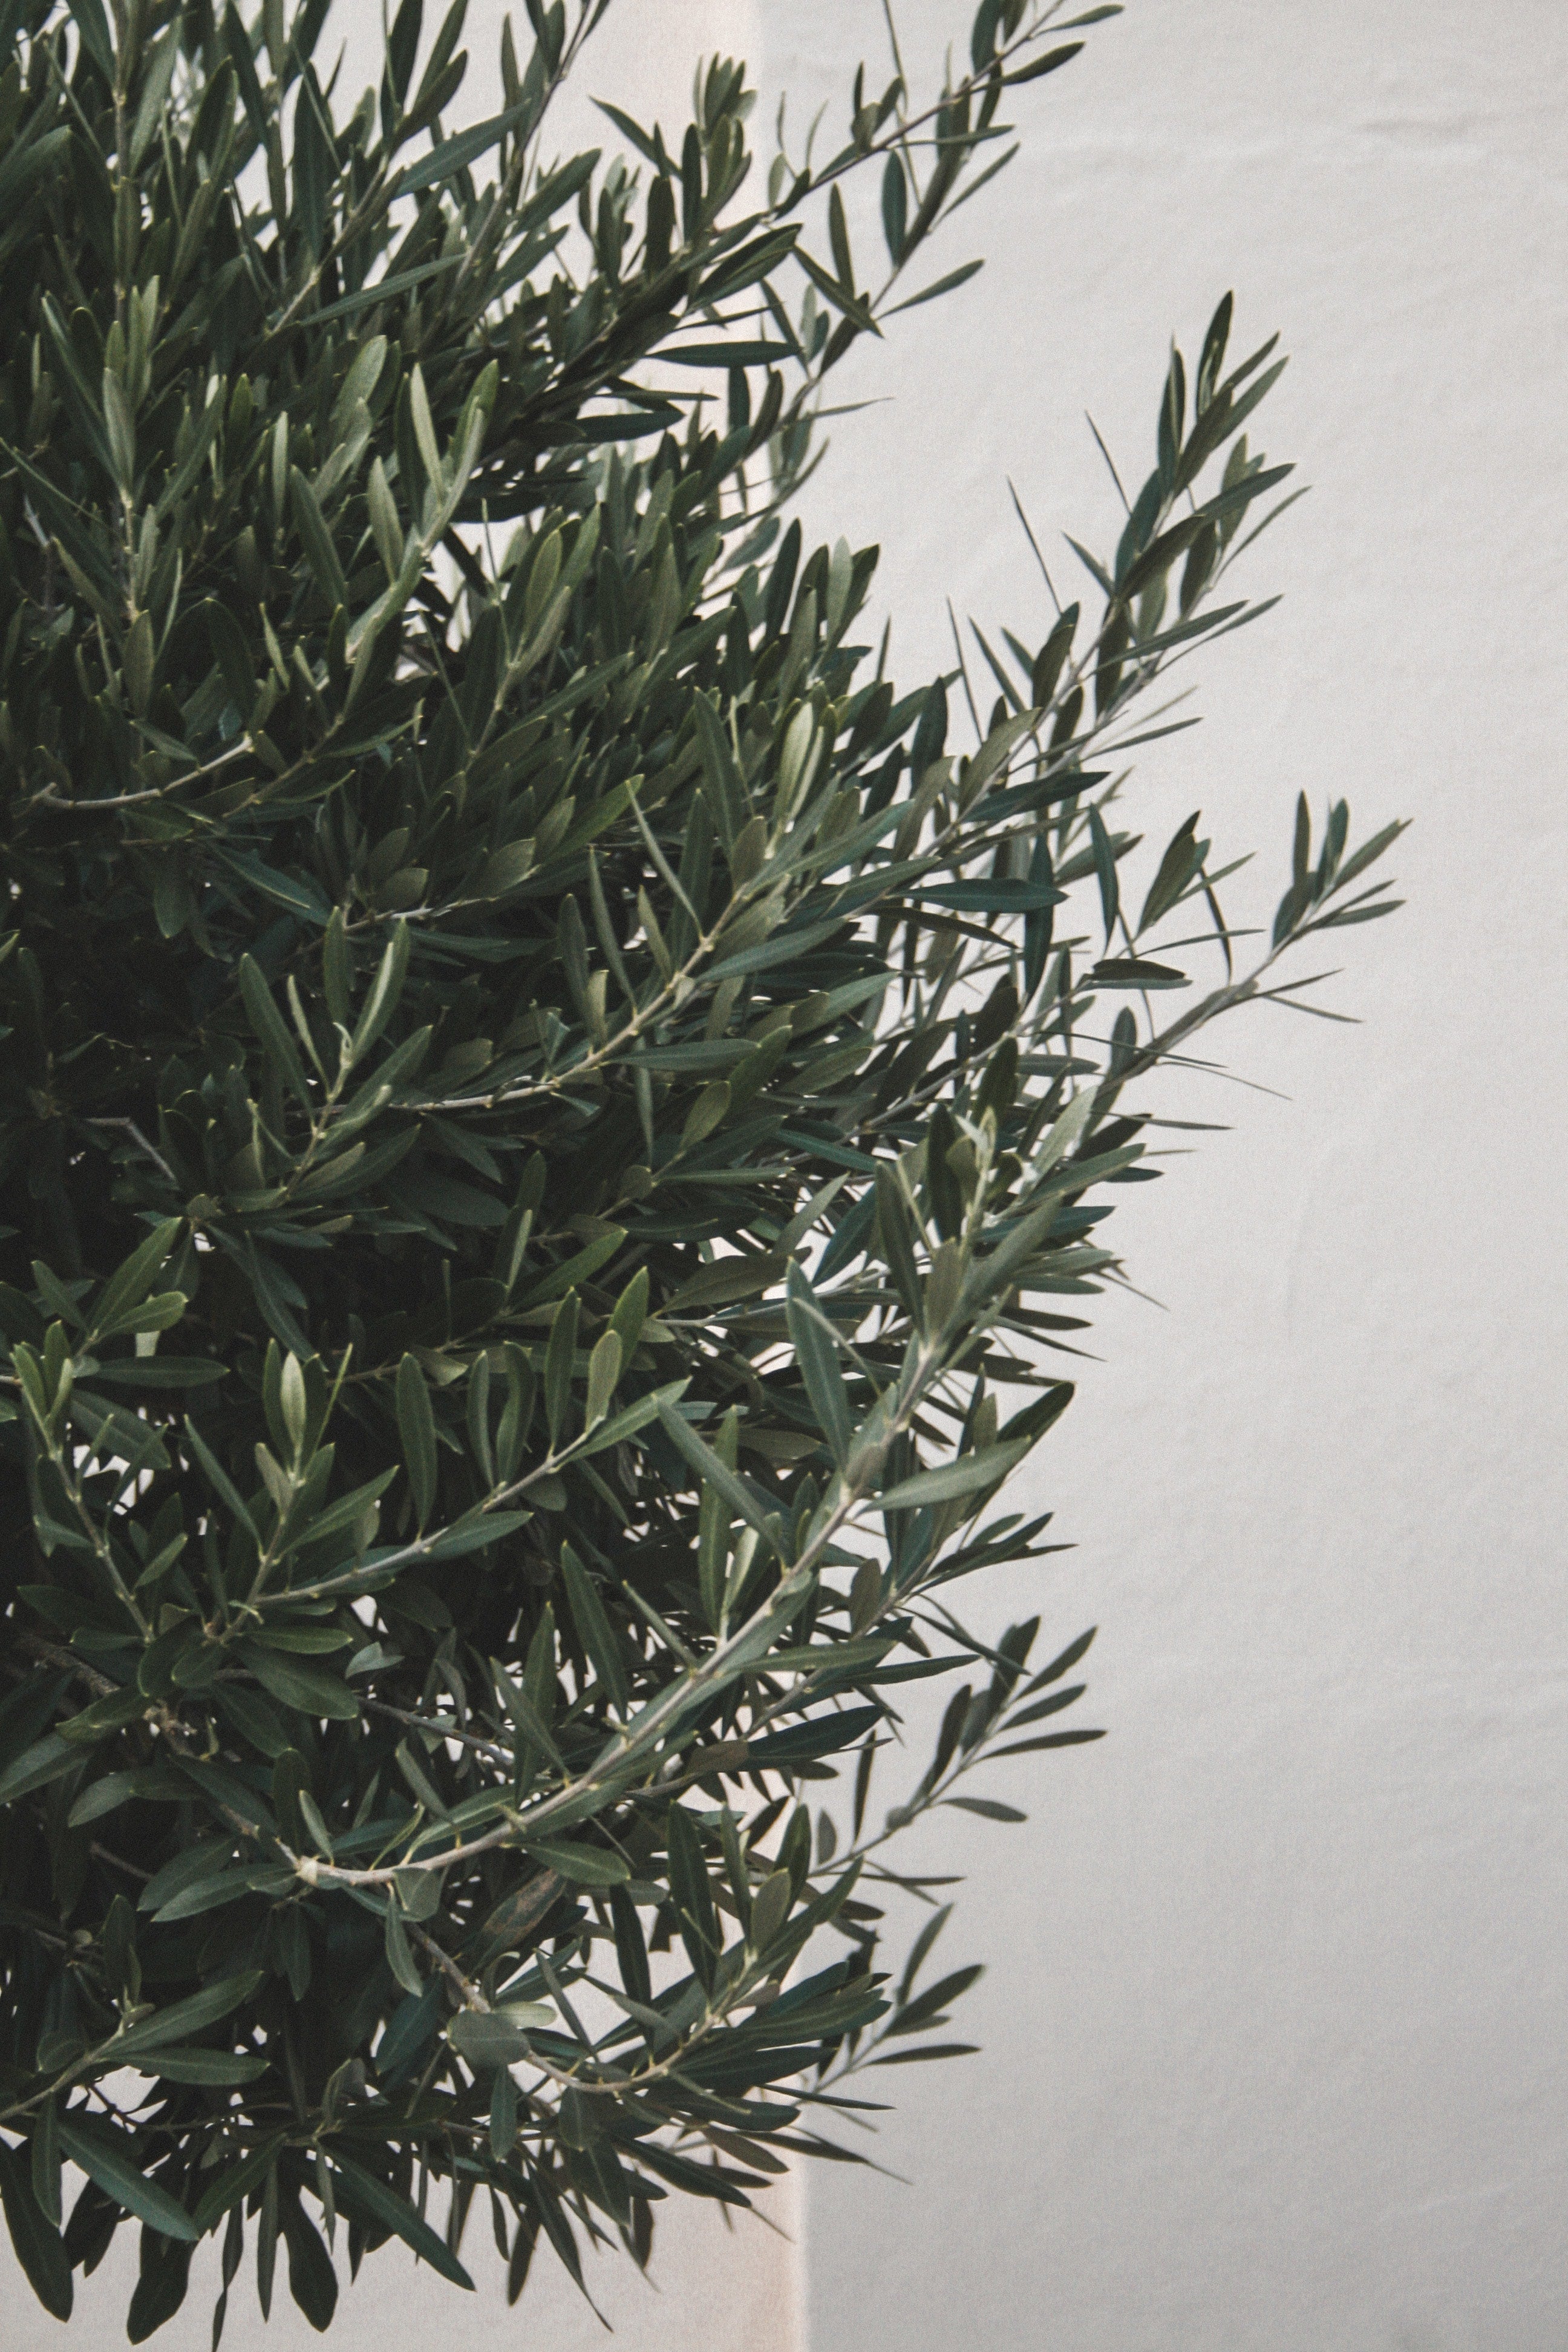 Olivenbaum-Krone mit dichten, tiefgrünen Trieben